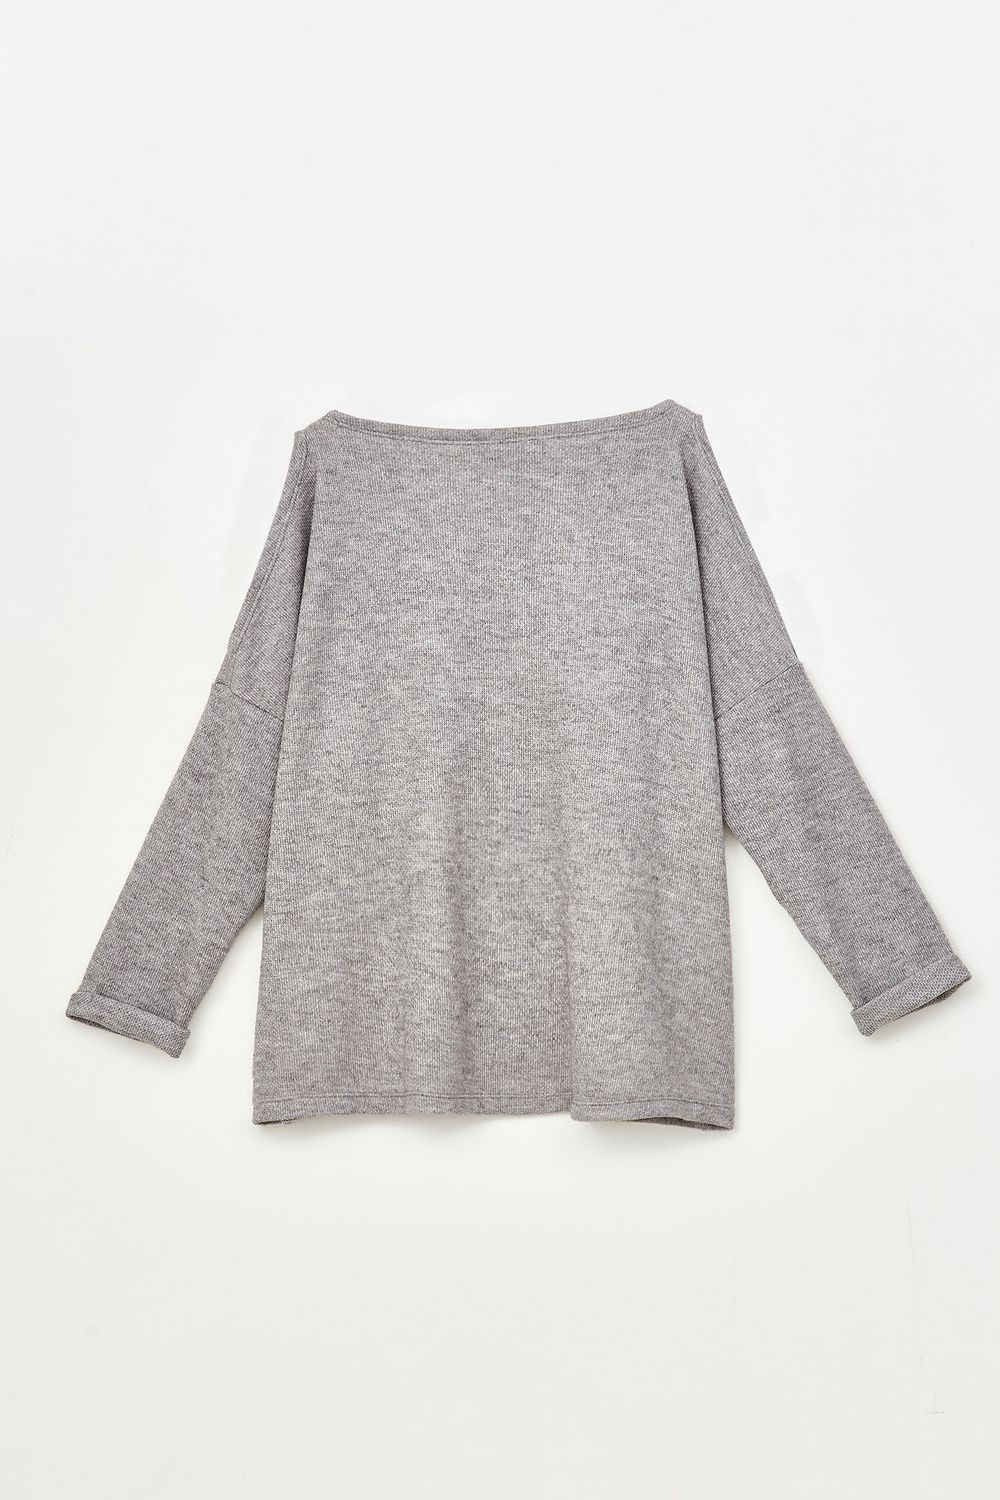 Sweater-Chalten-Gris-46